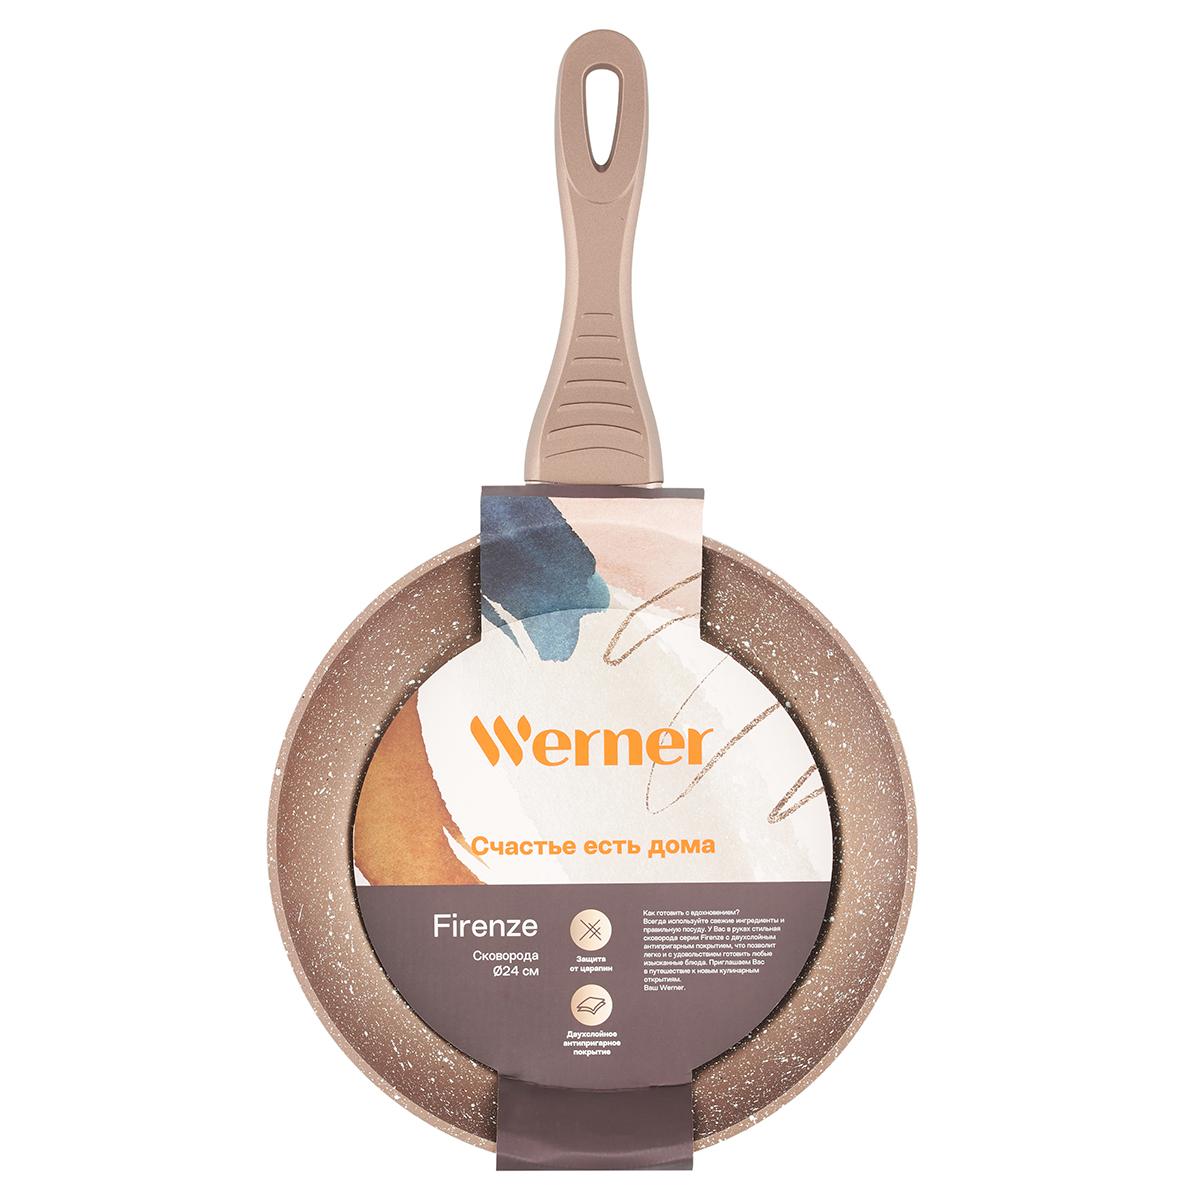 Сковорода Werner Firenze 24 см, цвет коричневый - фото 7